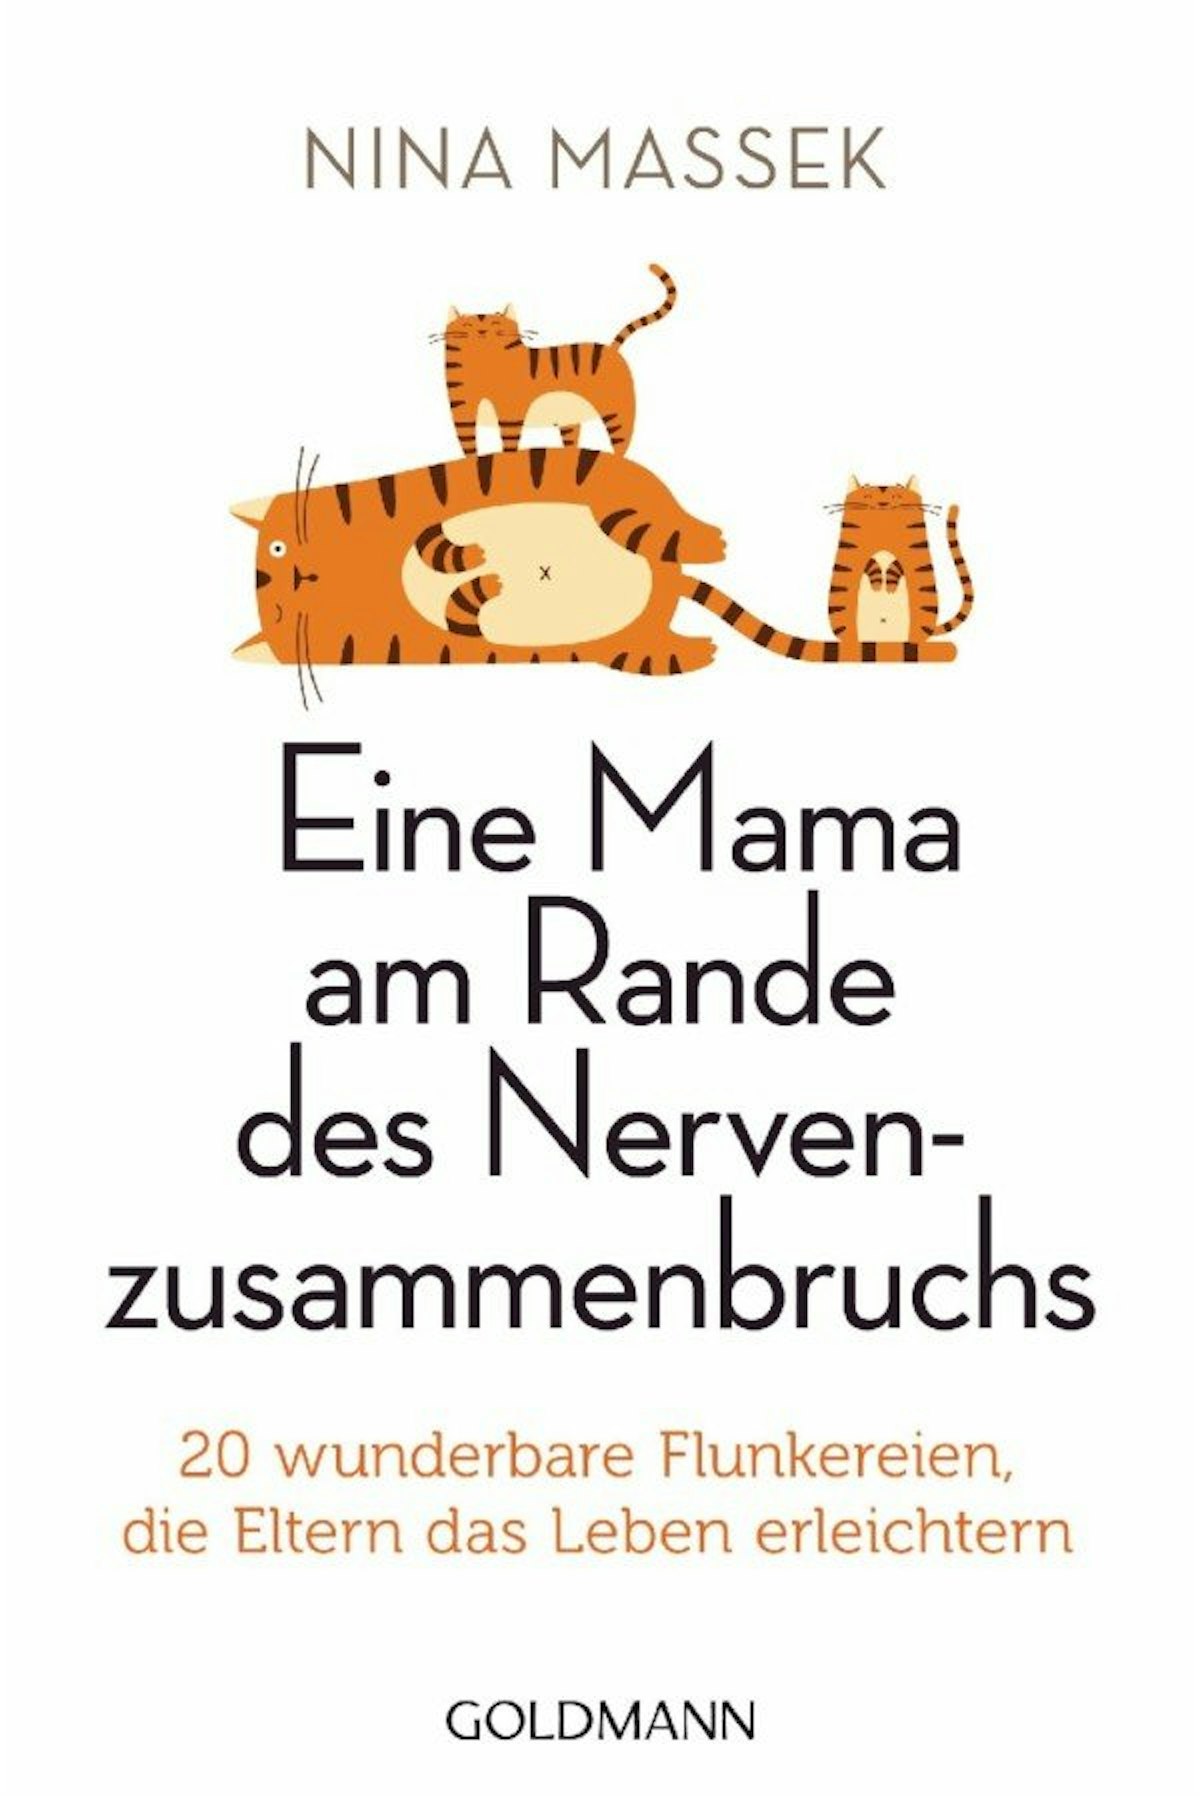 Nina Massek: „Eine Mama am Rande des Nervenzusammenbruchs – 20 wunderbare Flunkereien, die Eltern das Leben erleichtern", Goldmann, 9,99 Euro